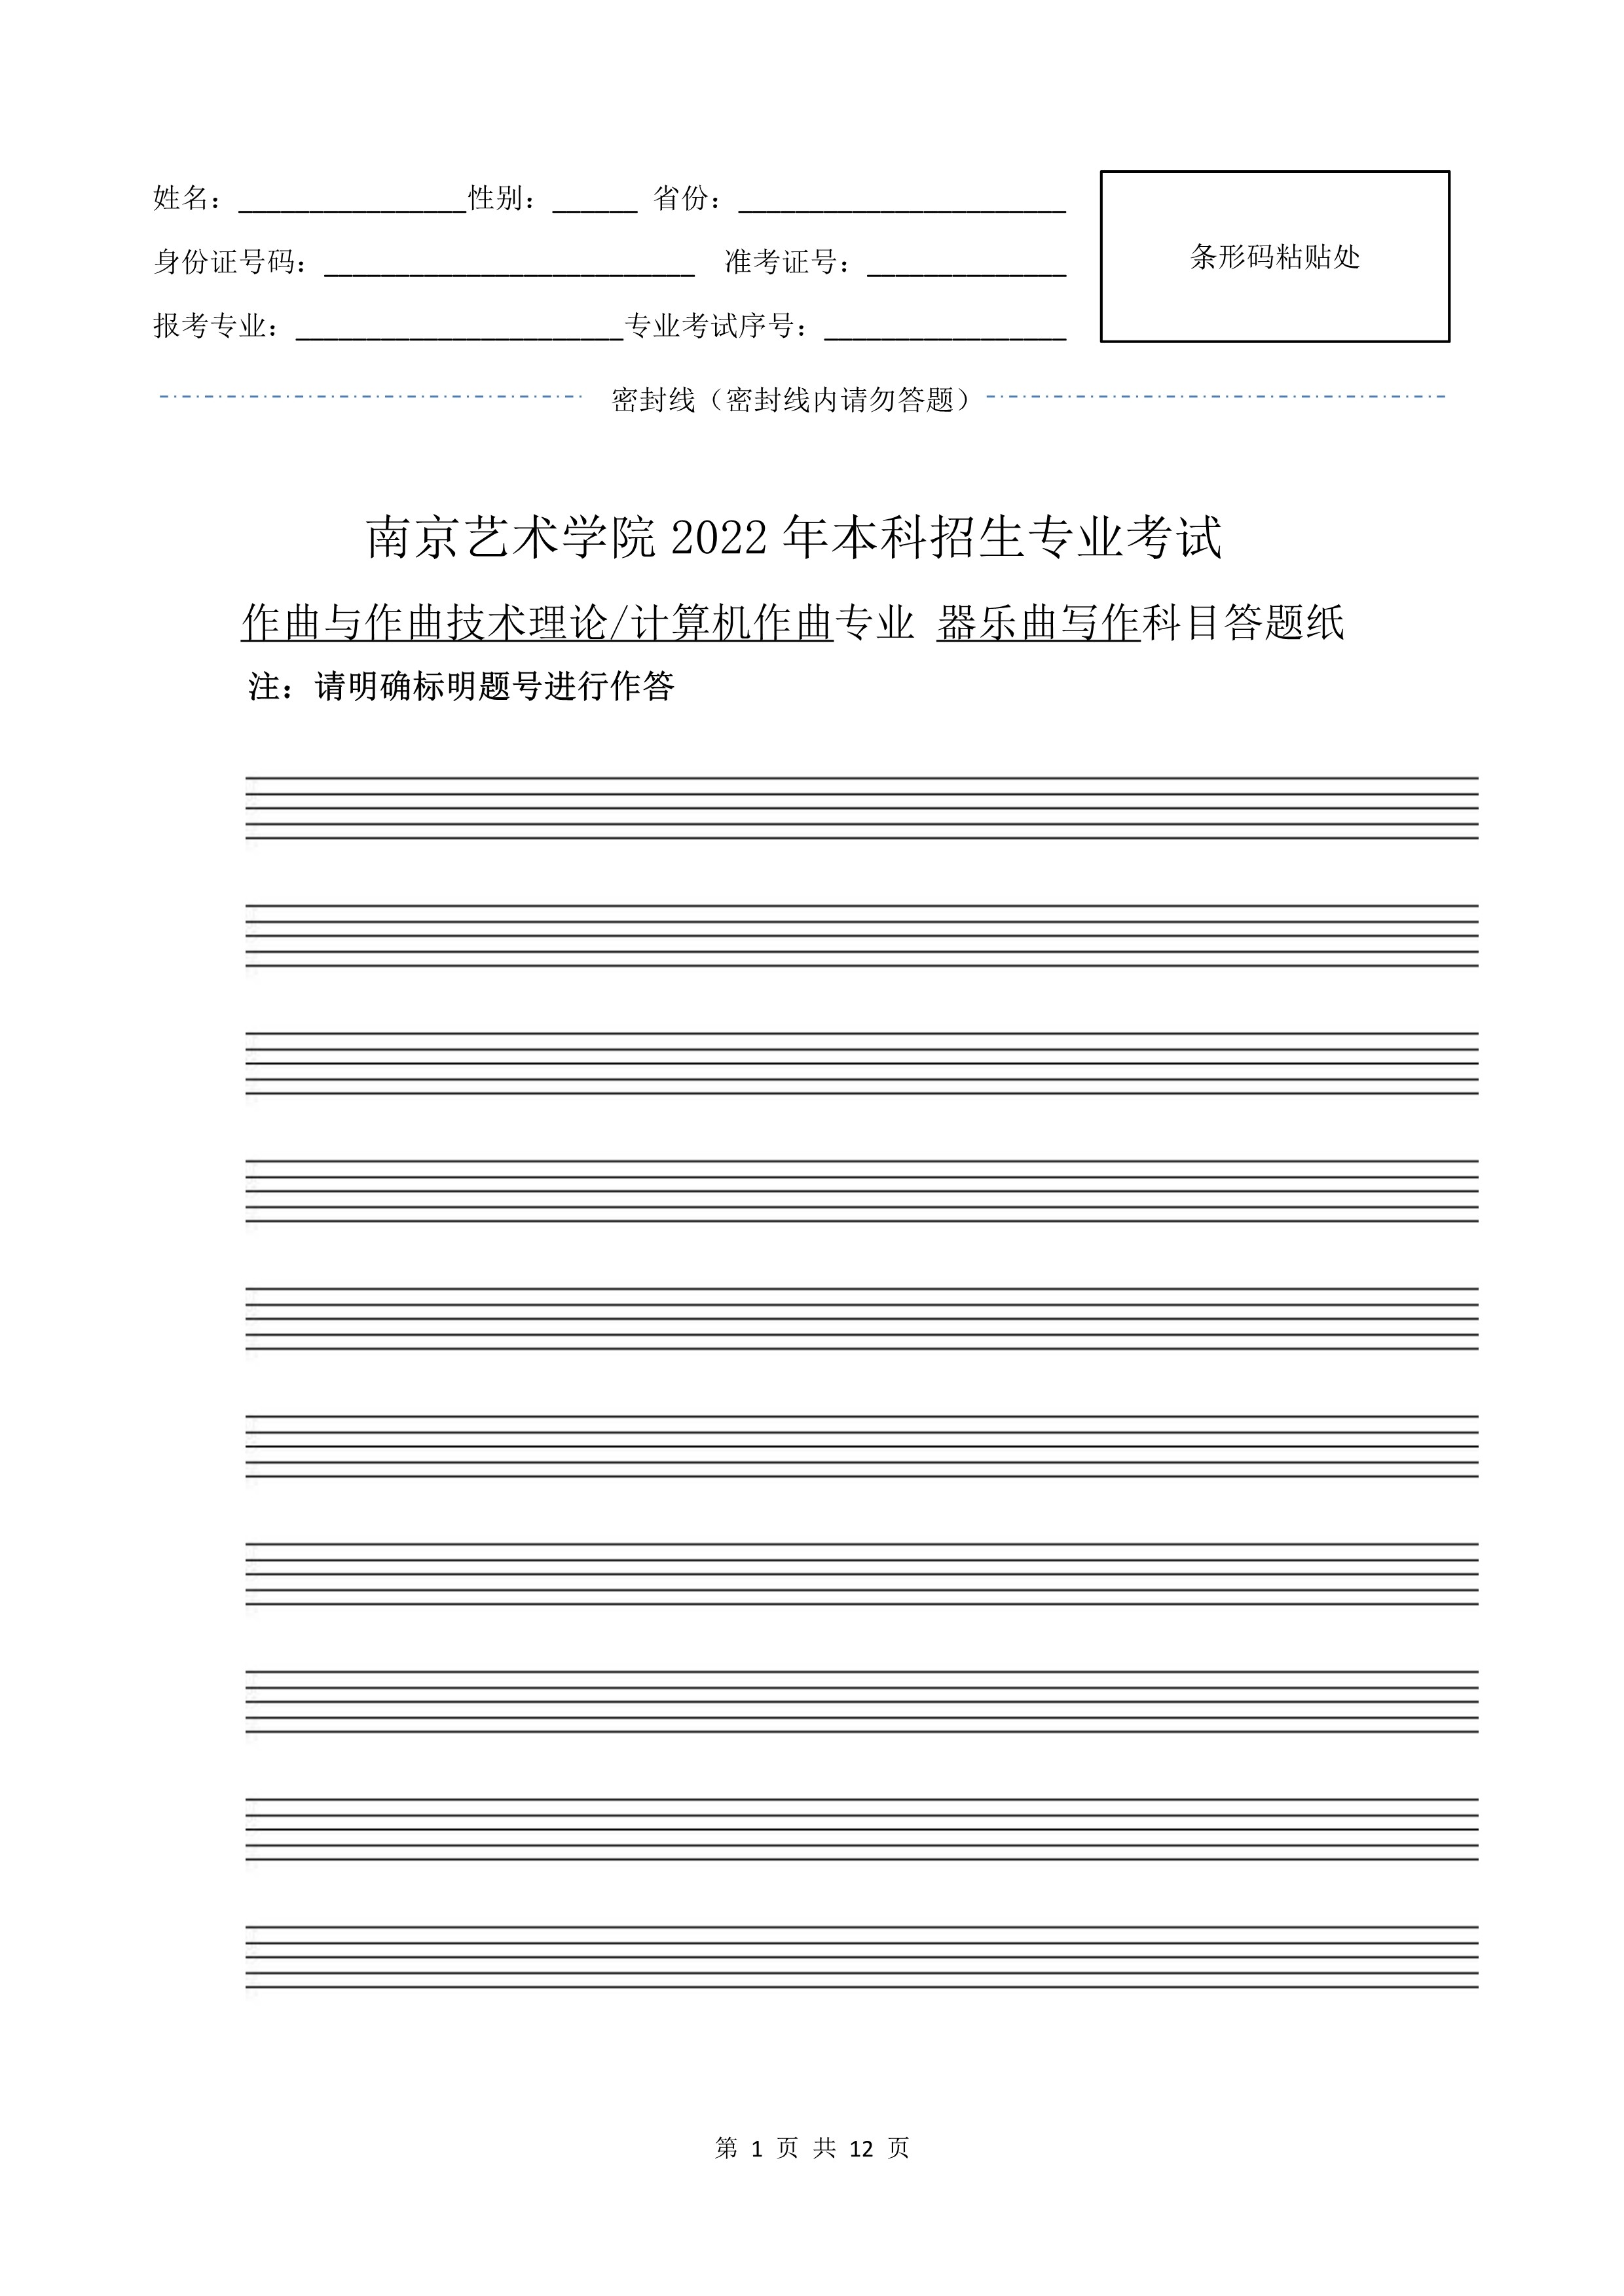 南京艺术学院2022年本科招生作曲与作曲技术理论、作曲与作曲技术理论（计算机作曲）专业《器乐曲写作》科目考试答题纸及草稿纸_1 - 副本.jpg